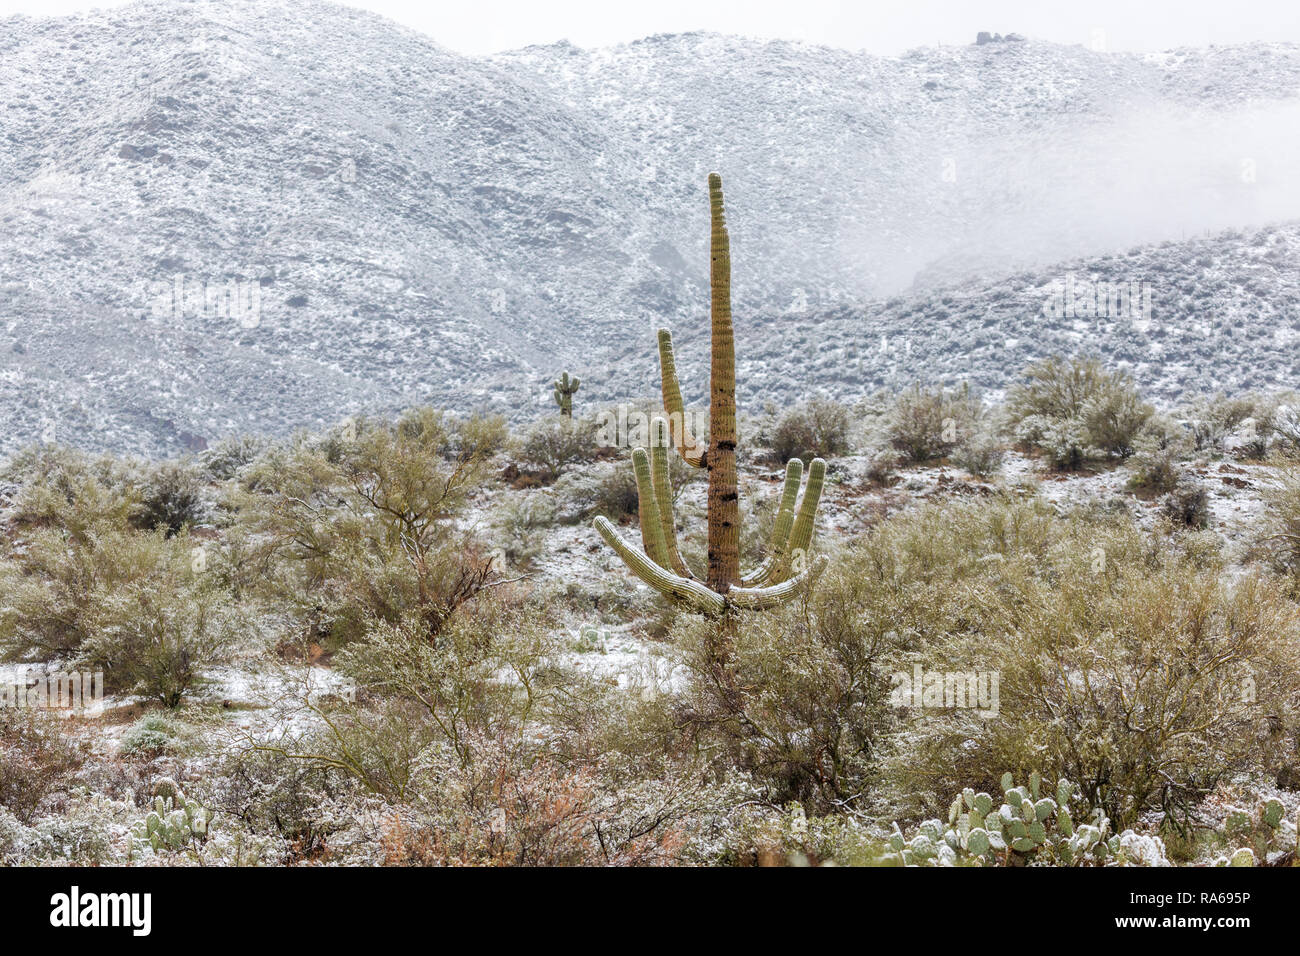 Schnee auf einem Saguaro-Kaktus in der Sonoran-Wüste bei Bumble Bee, Arizona, USA Stockfoto